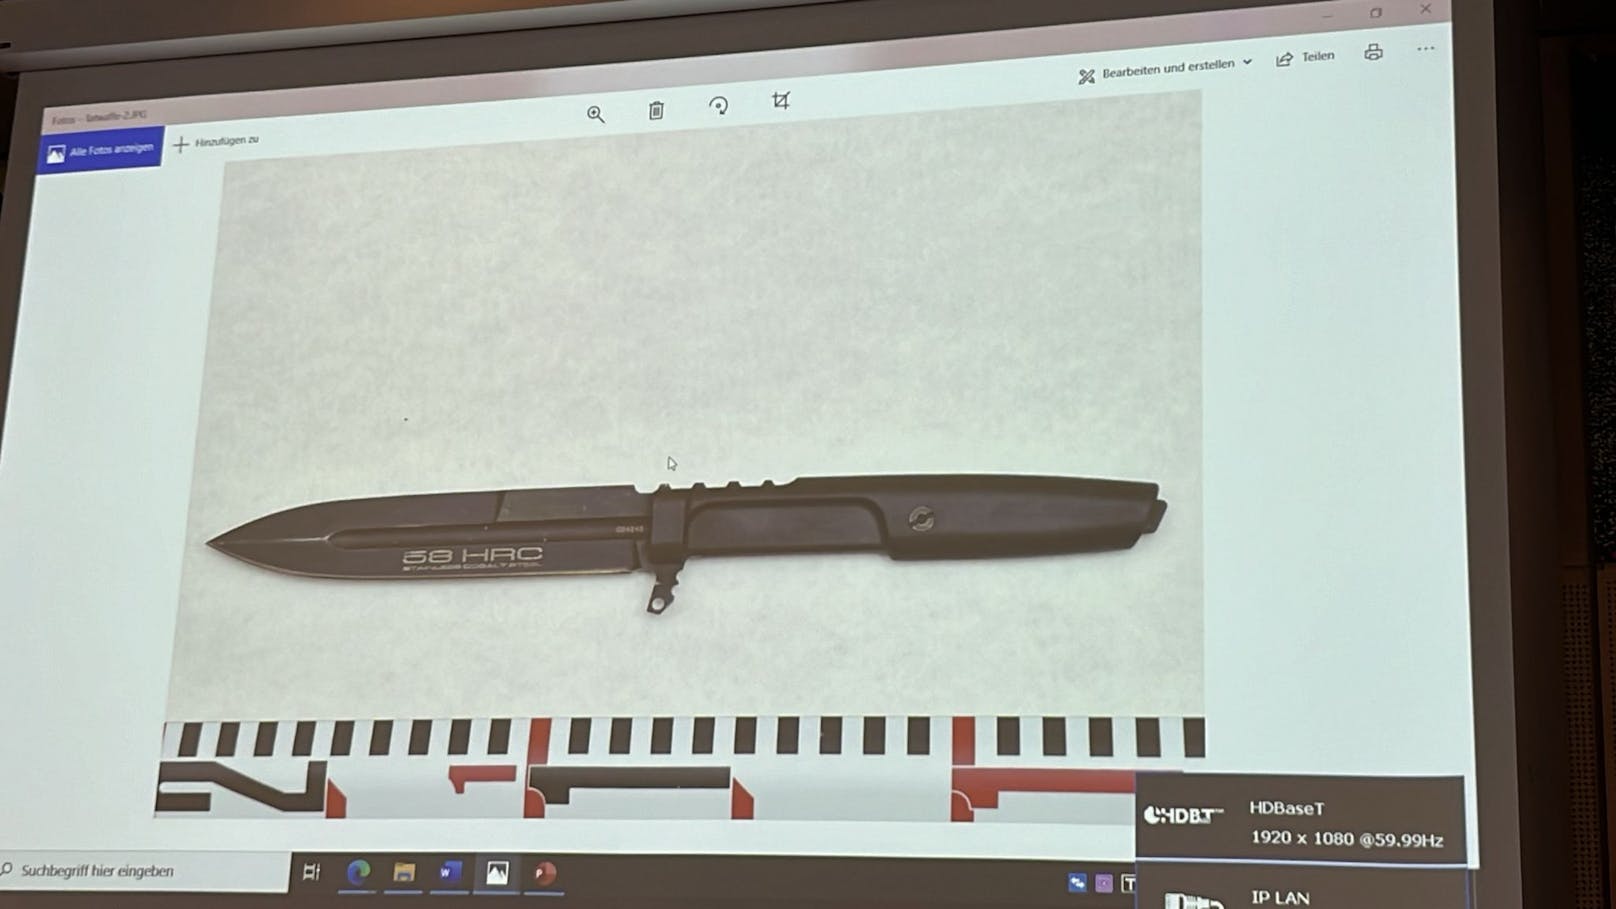 Die Tatwaffe, ein Stiletto-Messer, wurde von der Polizei sichergestellt.